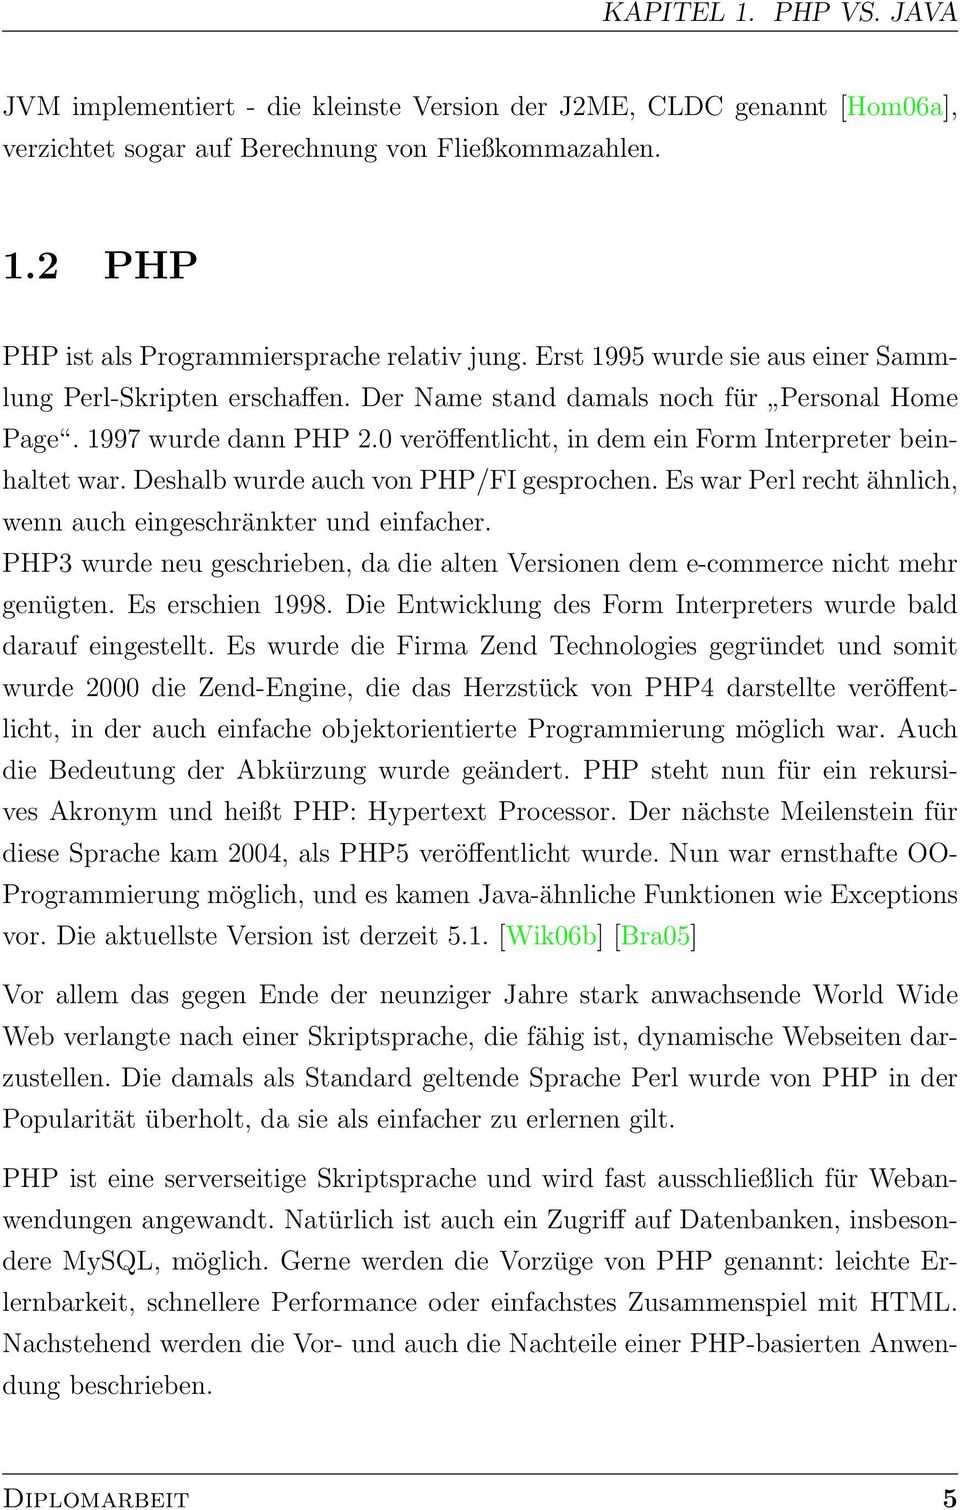 Deshalb wurde auch von PHP/FI gesprochen. Es war Perl recht ähnlich, wenn auch eingeschränkter und einfacher. PHP3 wurde neu geschrieben, da die alten Versionen dem e-commerce nicht mehr genügten.